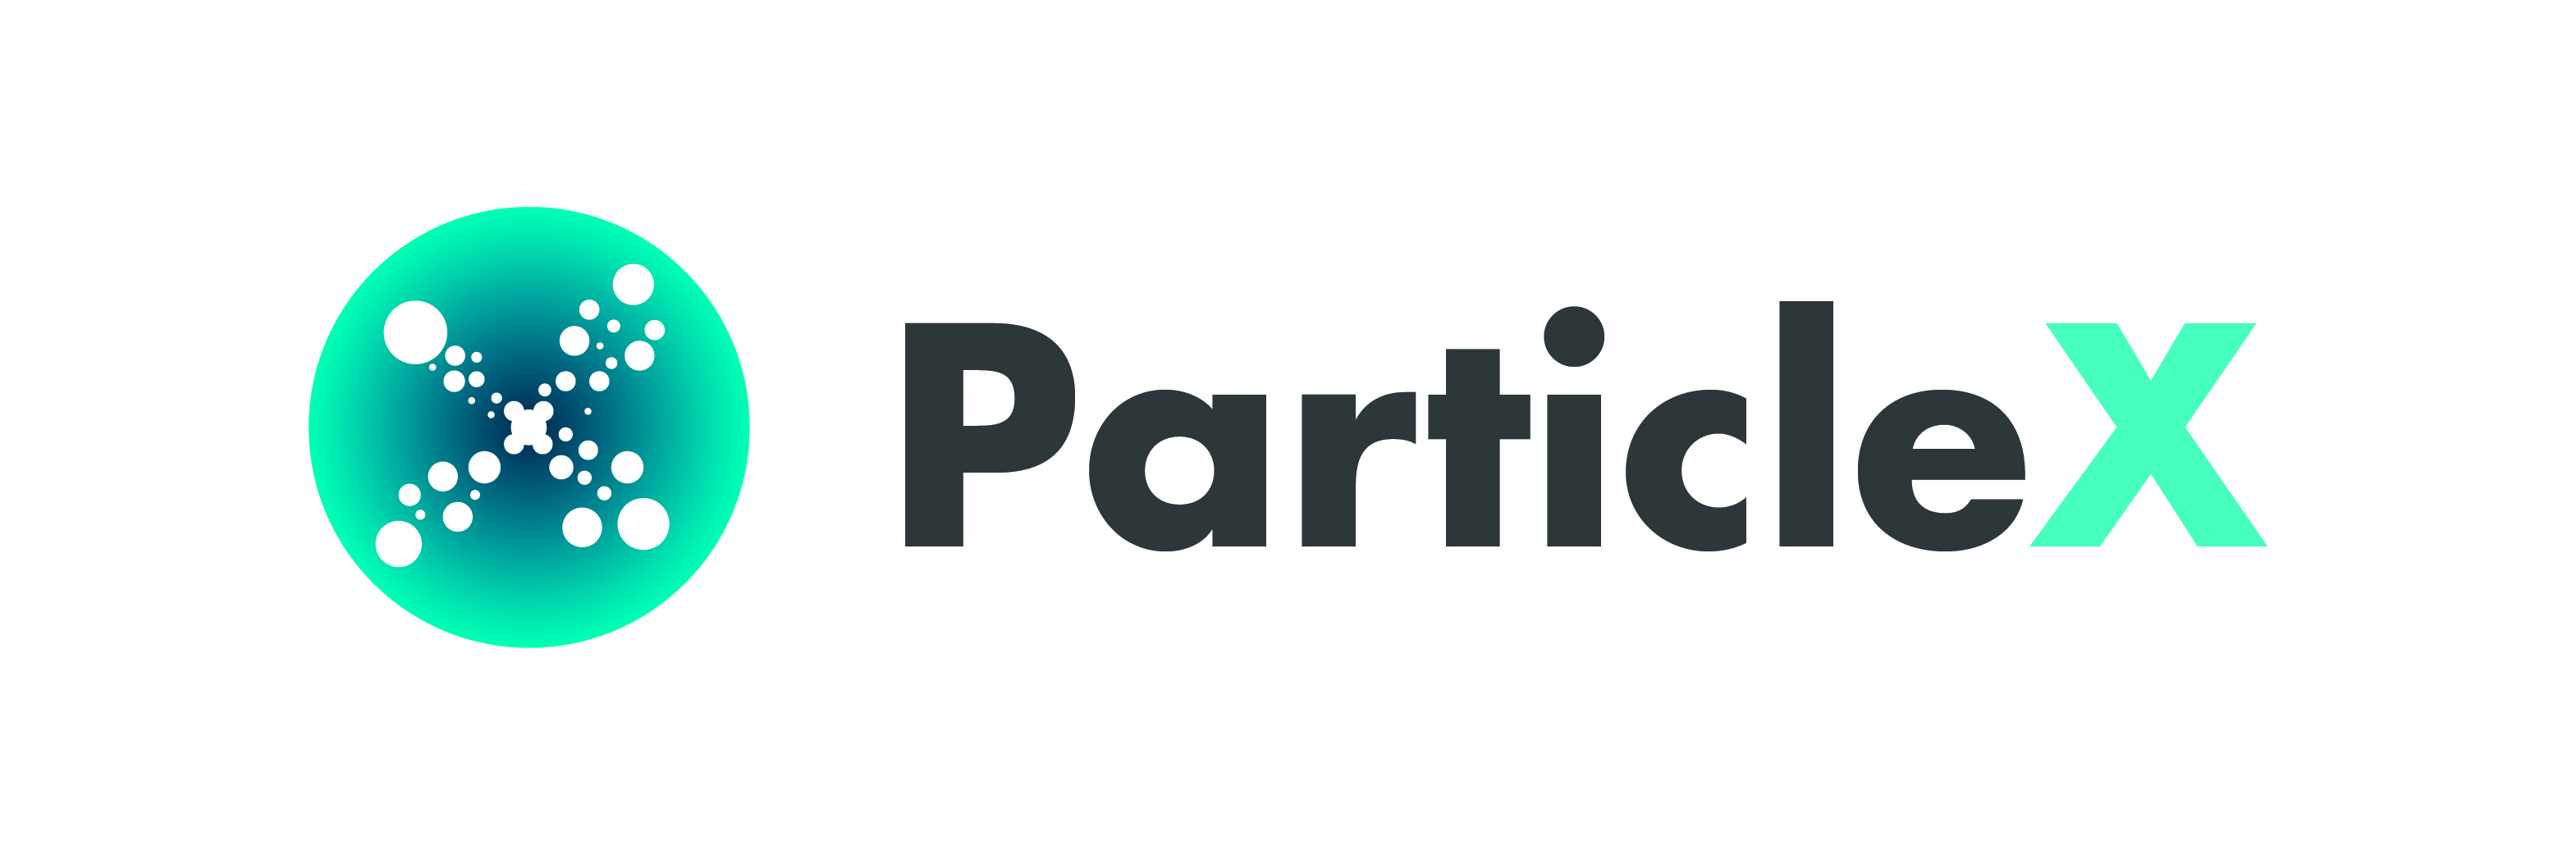 ParticleX 사진